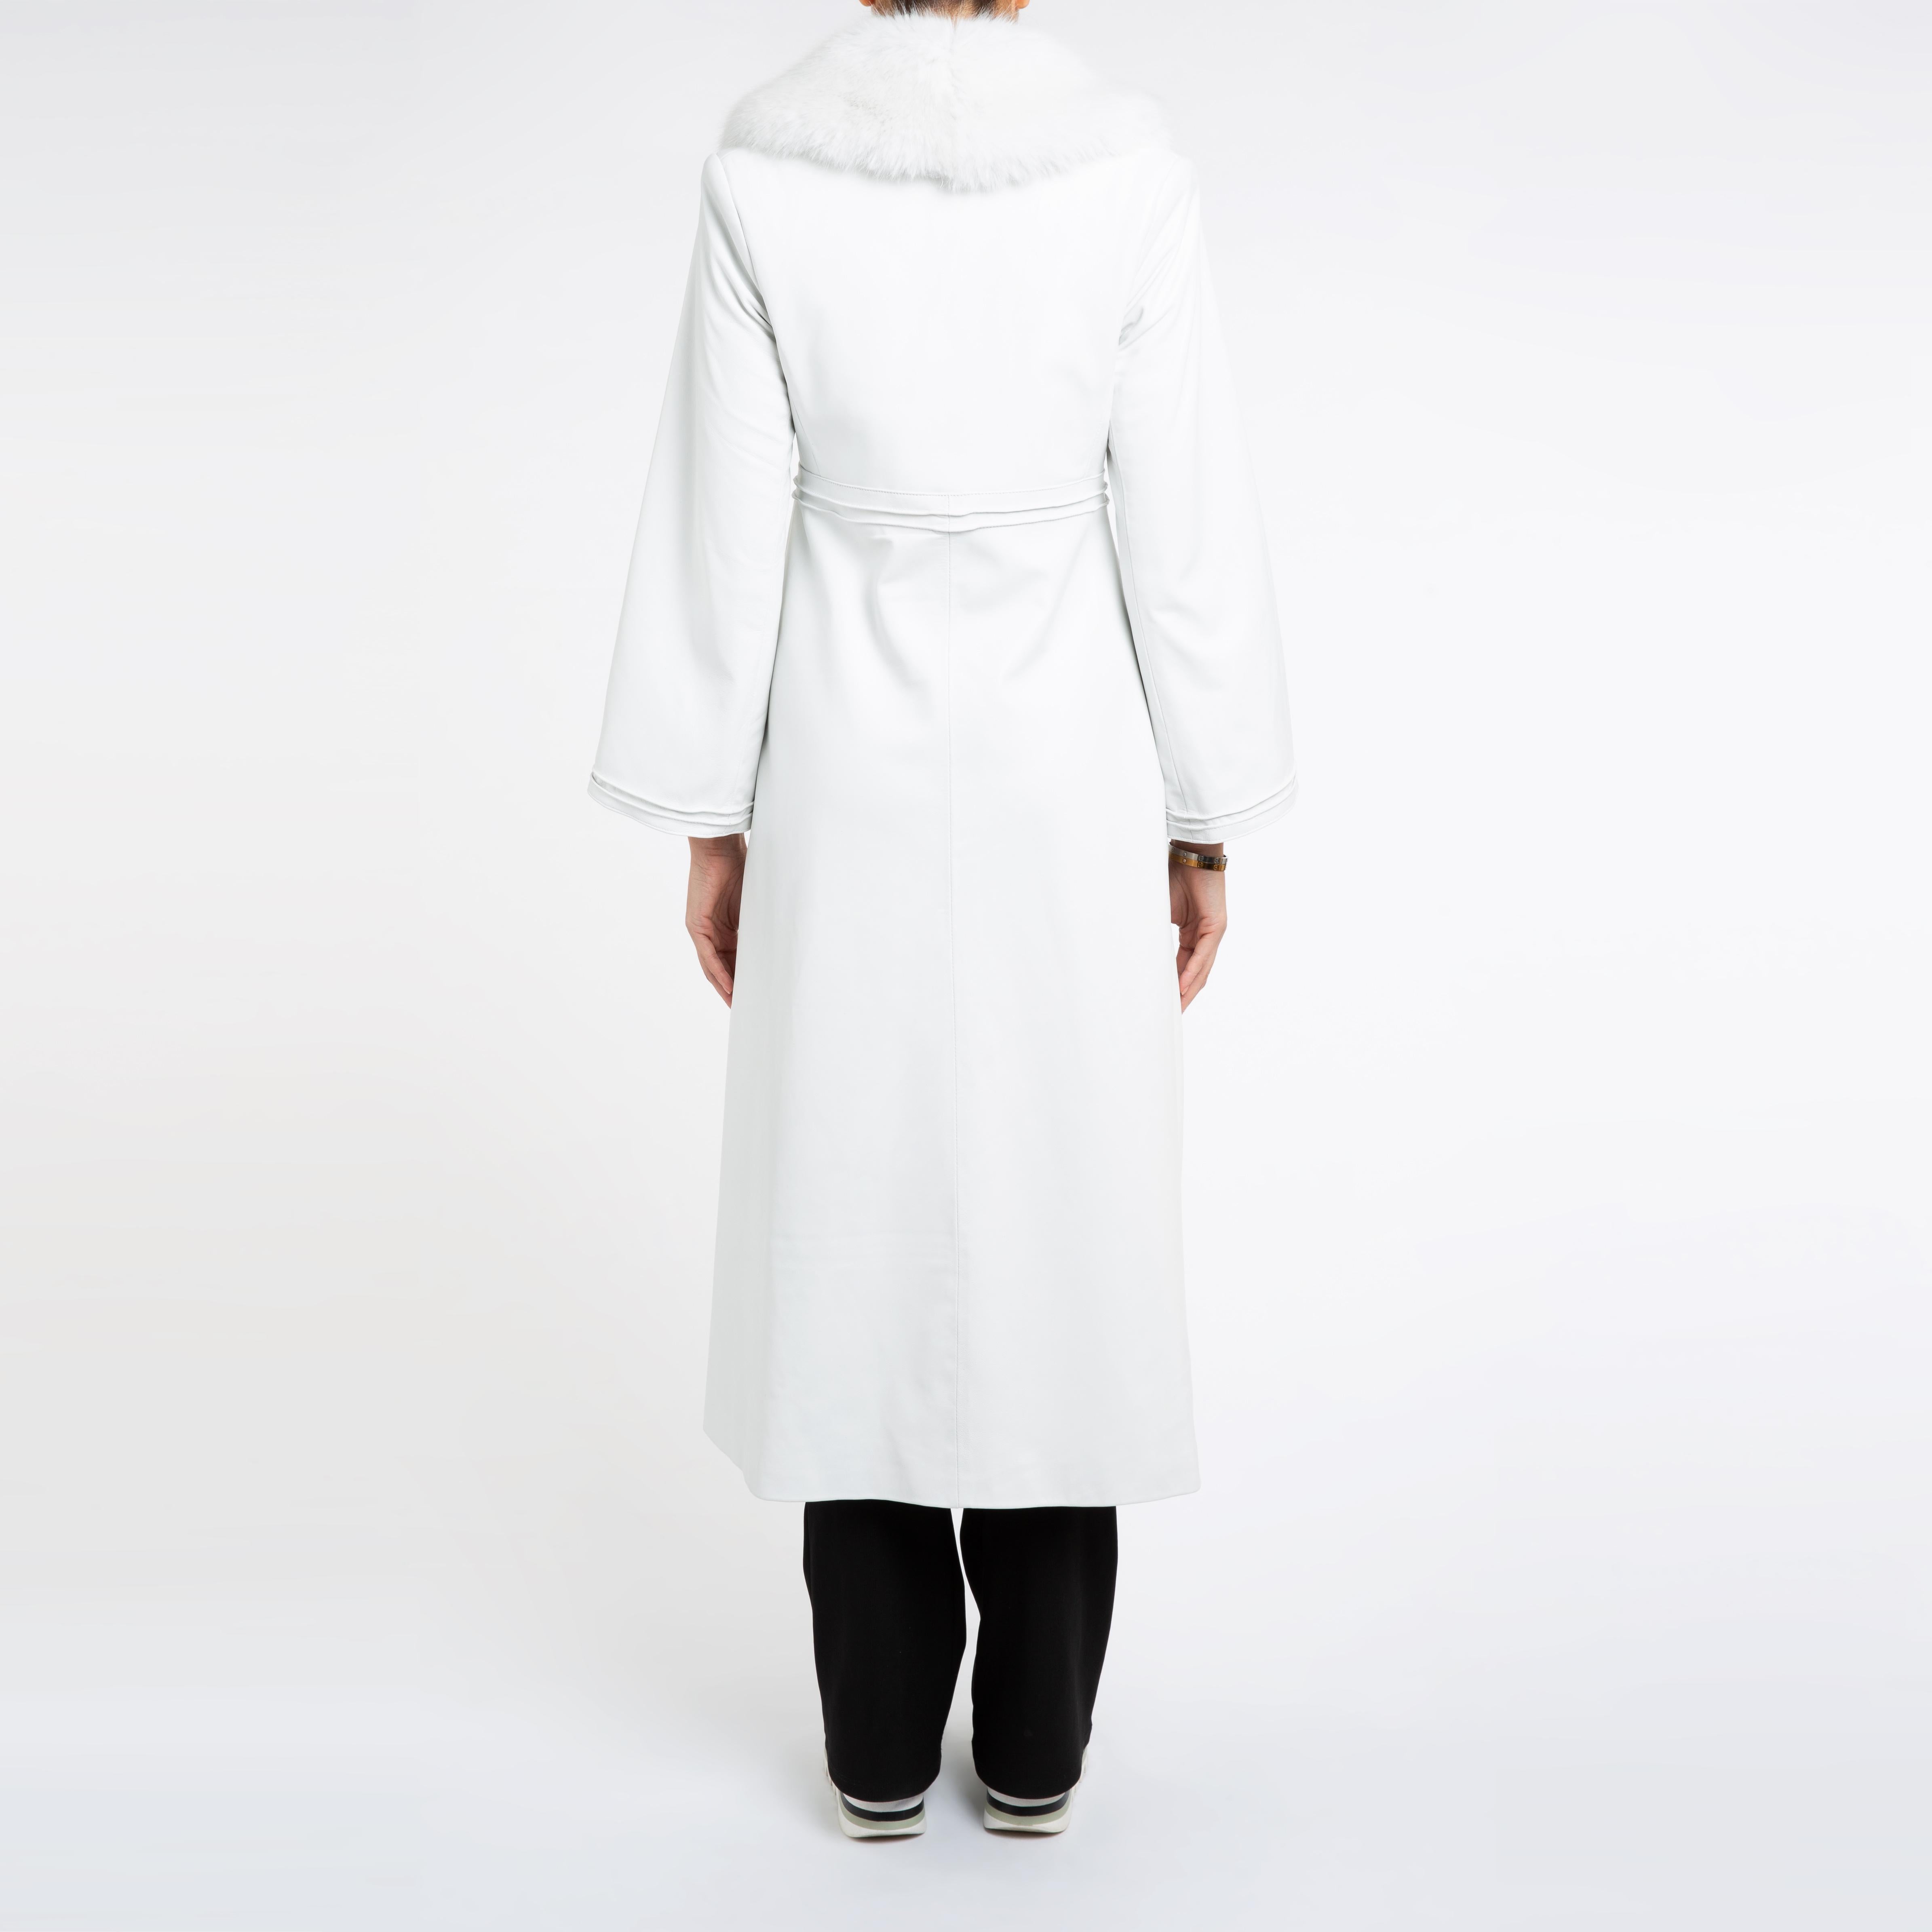 Women's Verheyen London Edward Leather Coat in Aquamarine & White Faux Fur - Size 8 UK 